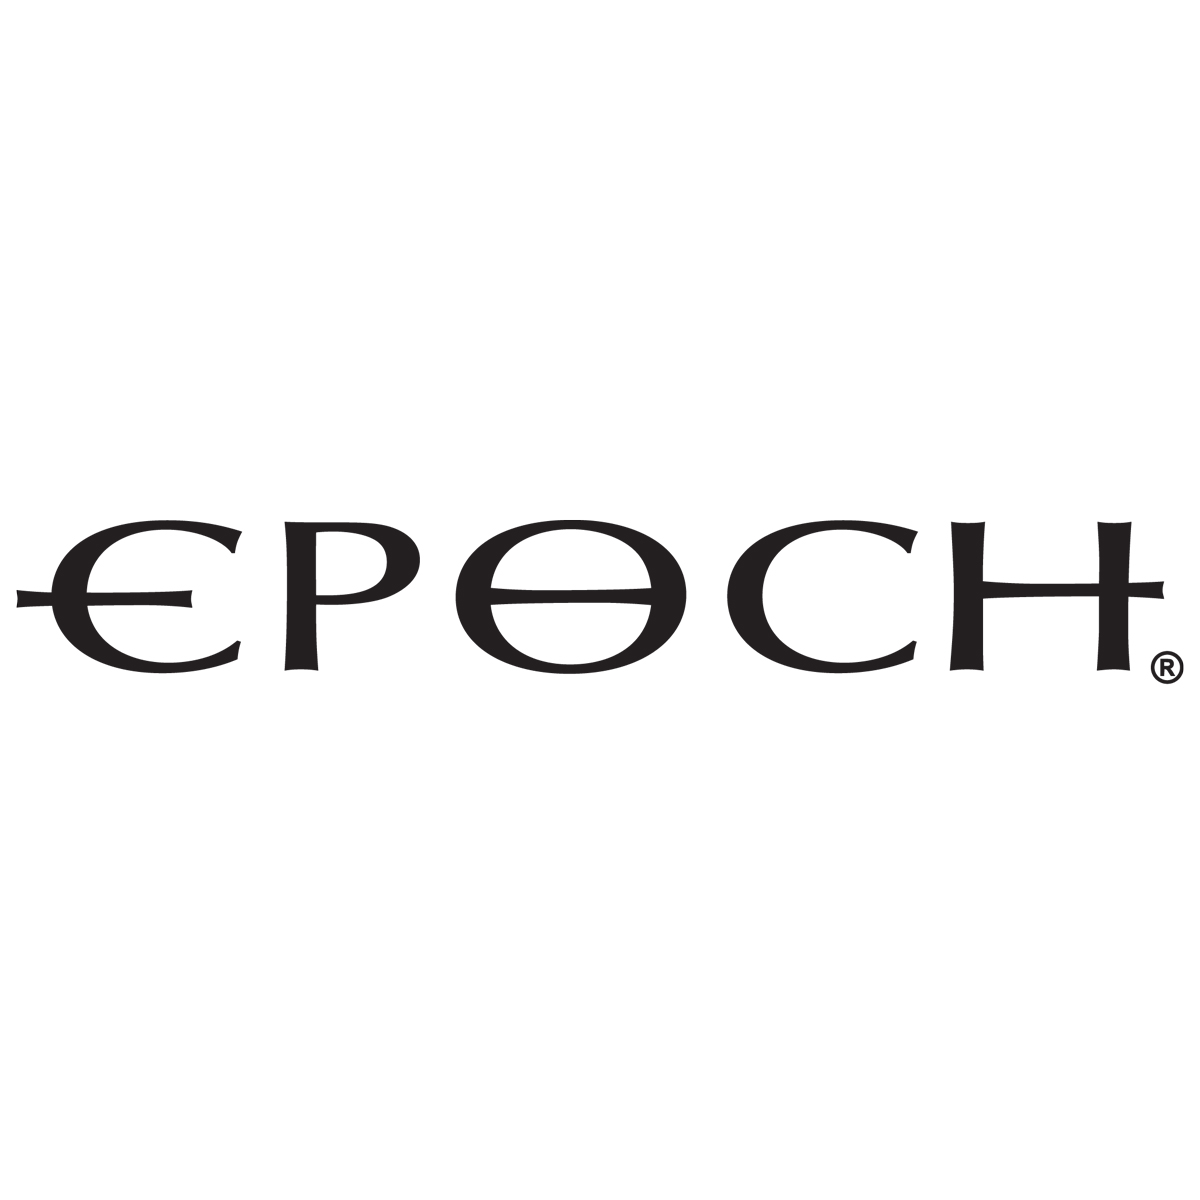 epoch logo.jpg